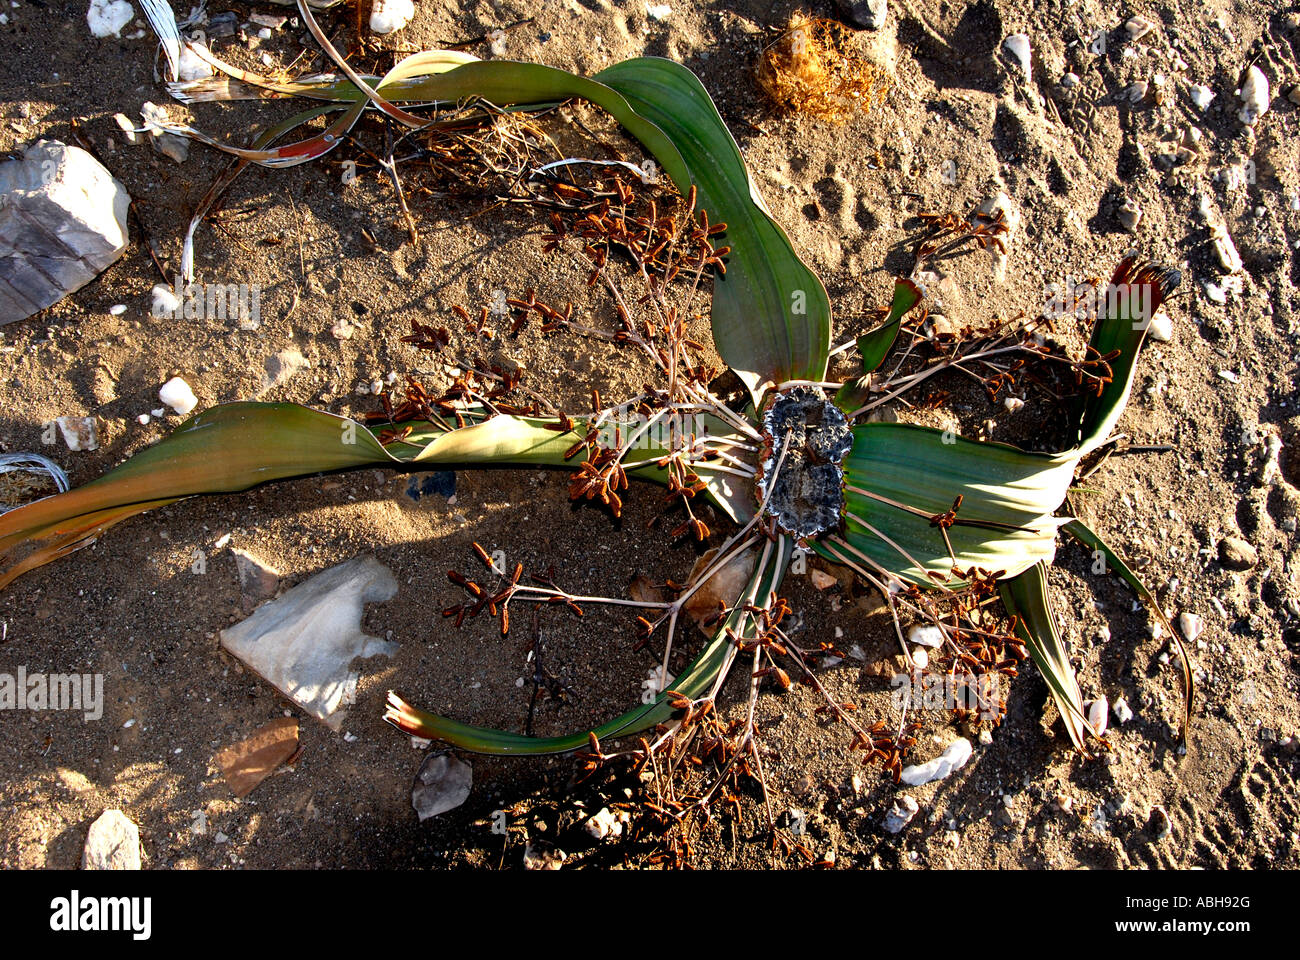 Usine Kaokland Welwitschia mirabilis le nord de la Namibie Afrique du Sud Banque D'Images